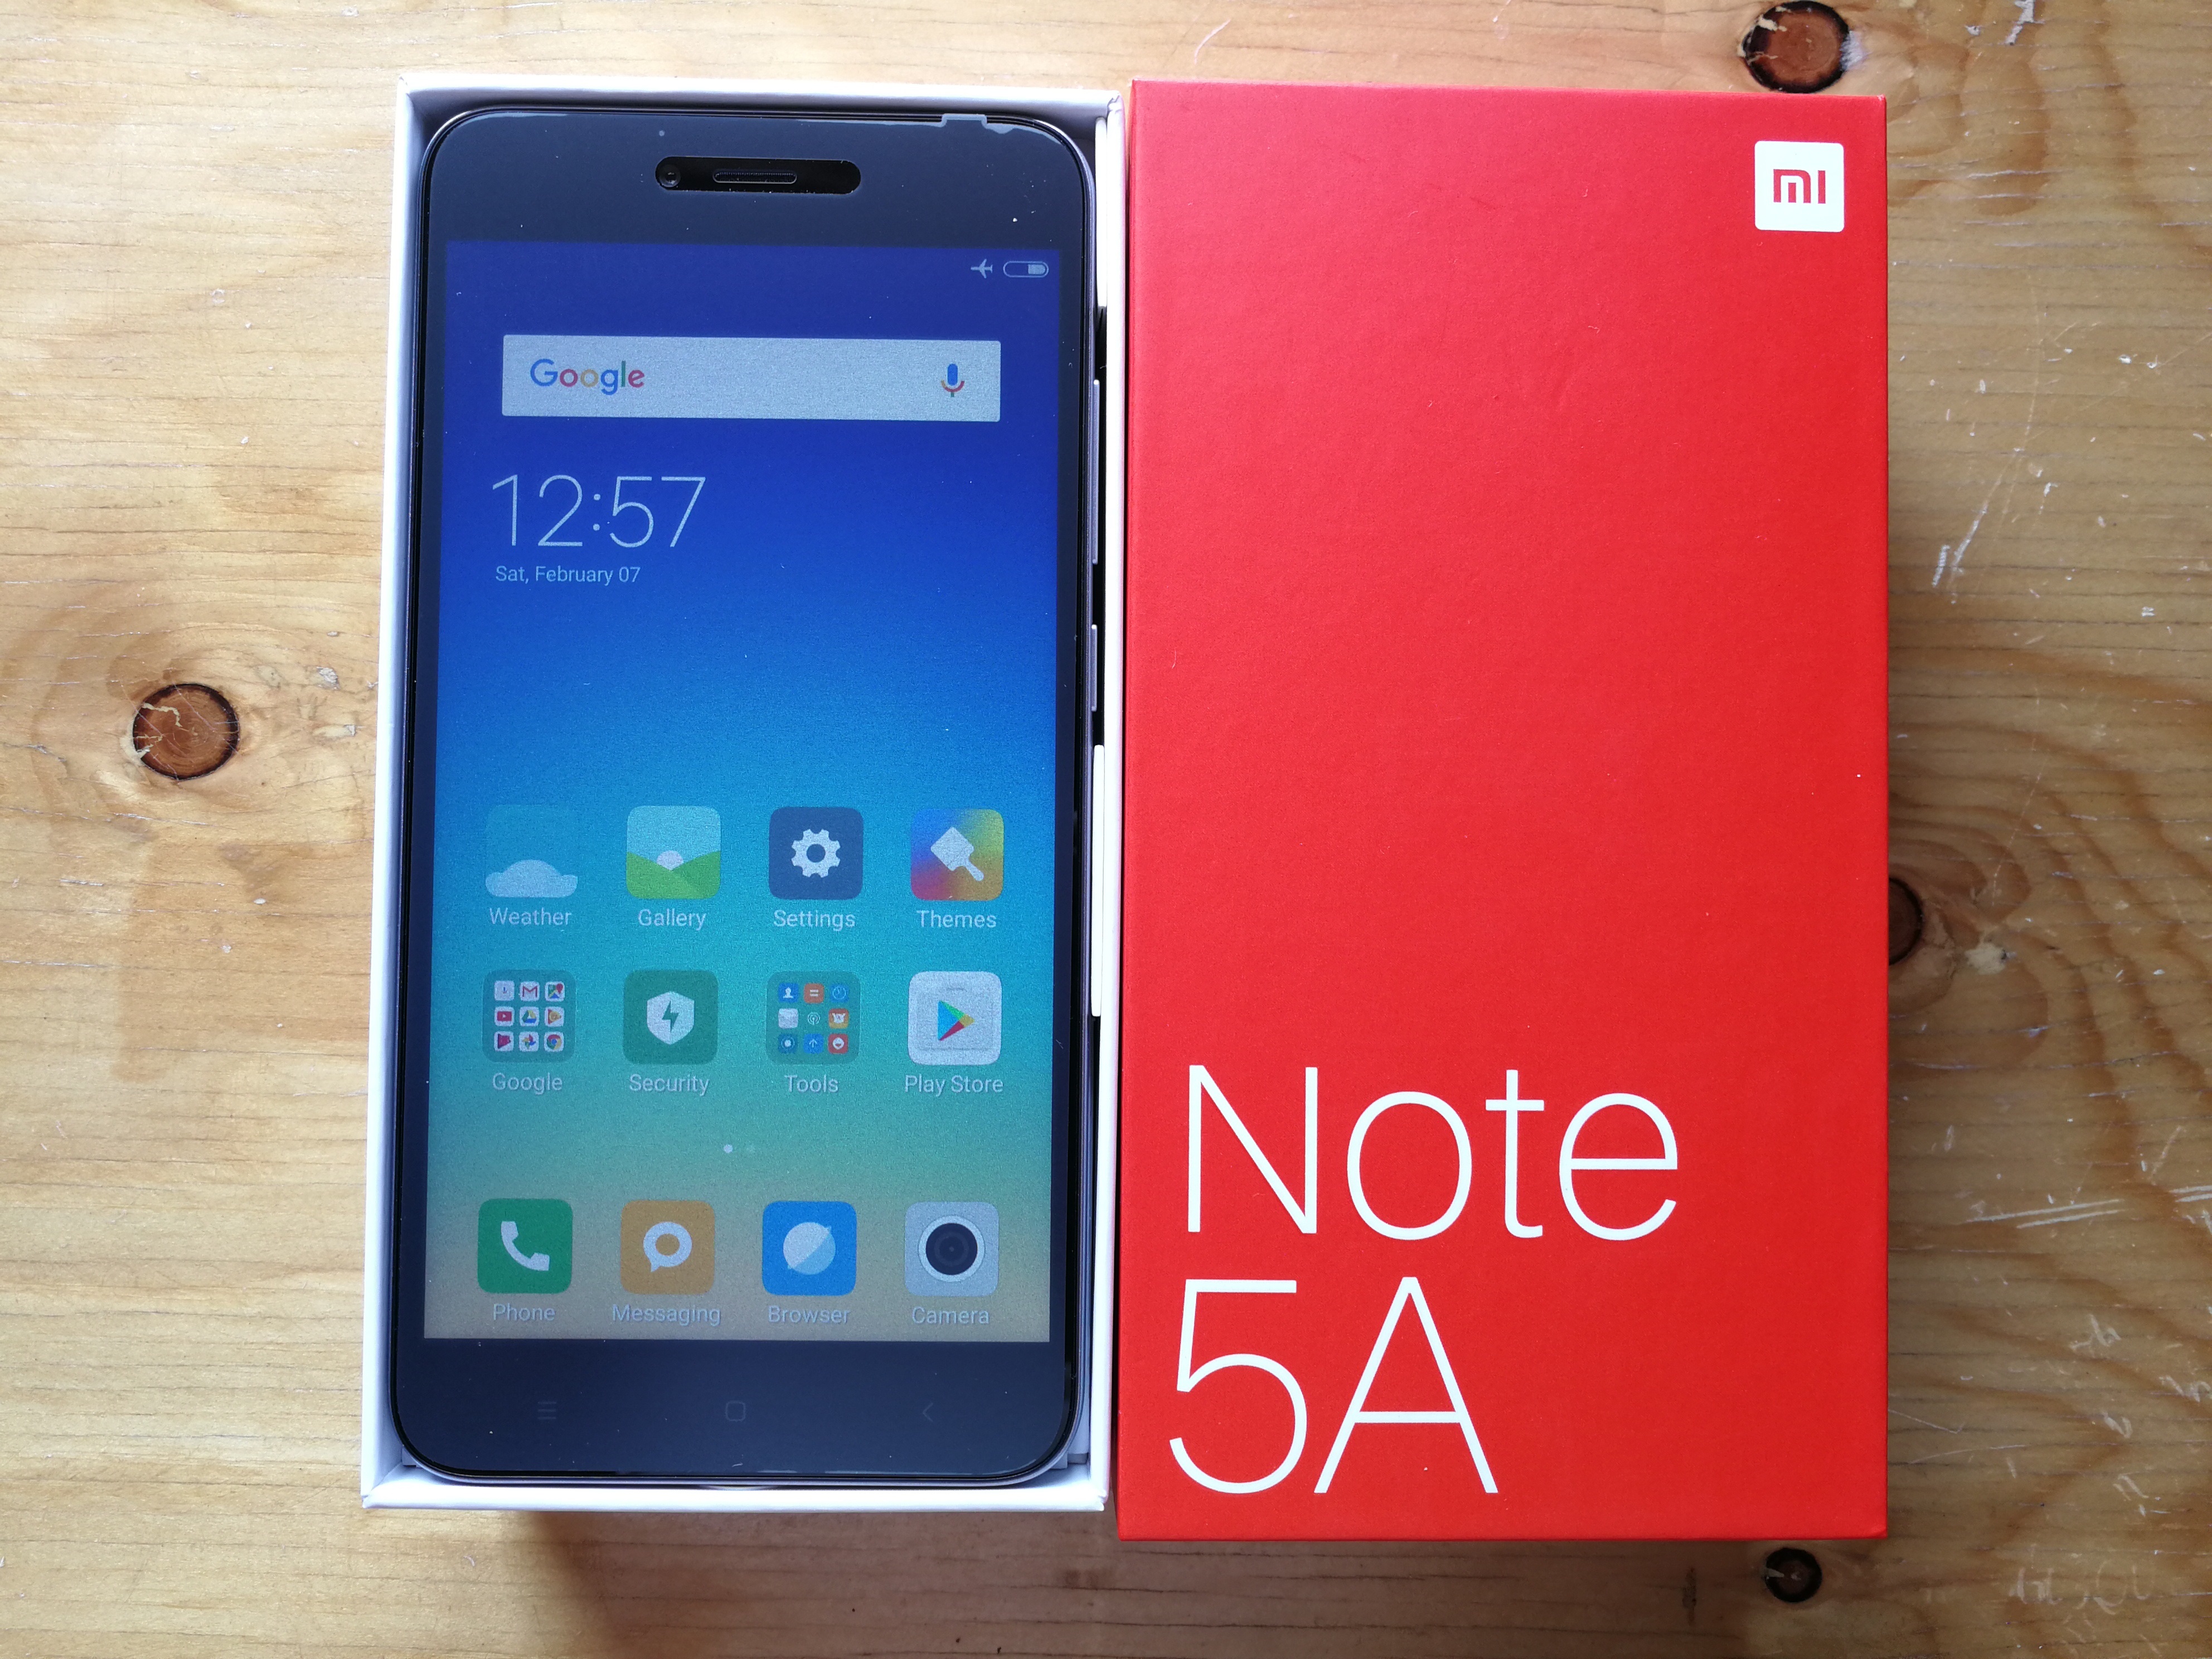 Gambar Hp Xiaomi Note 5a - KibrisPDR